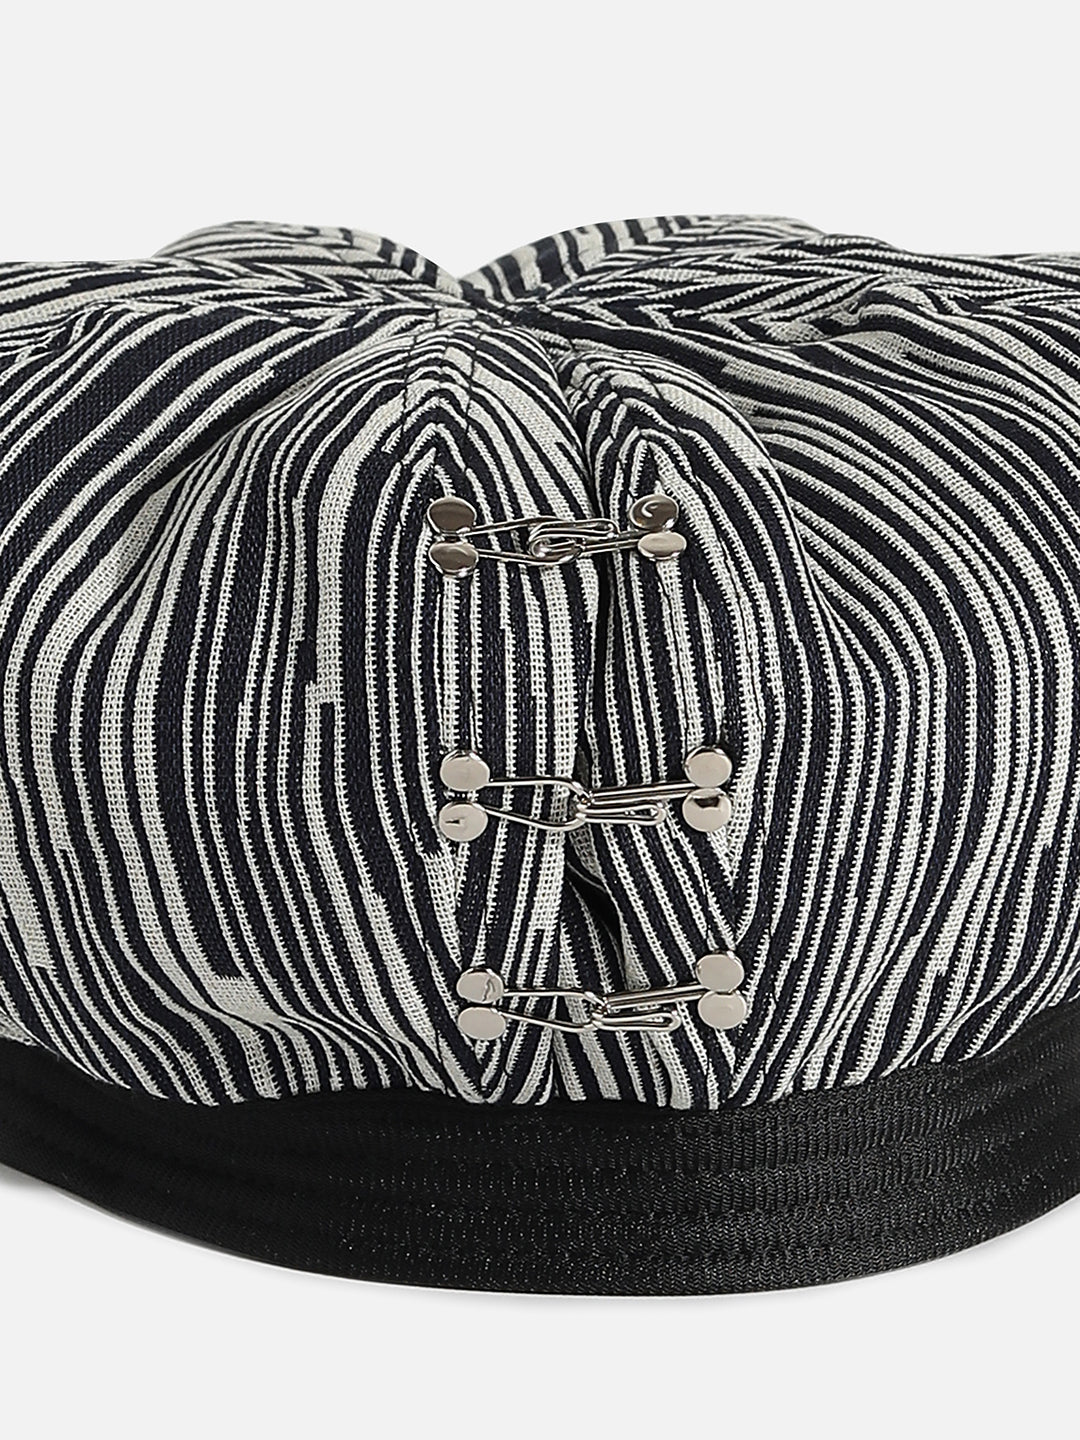 Black & White Textured Bakerboy Hat